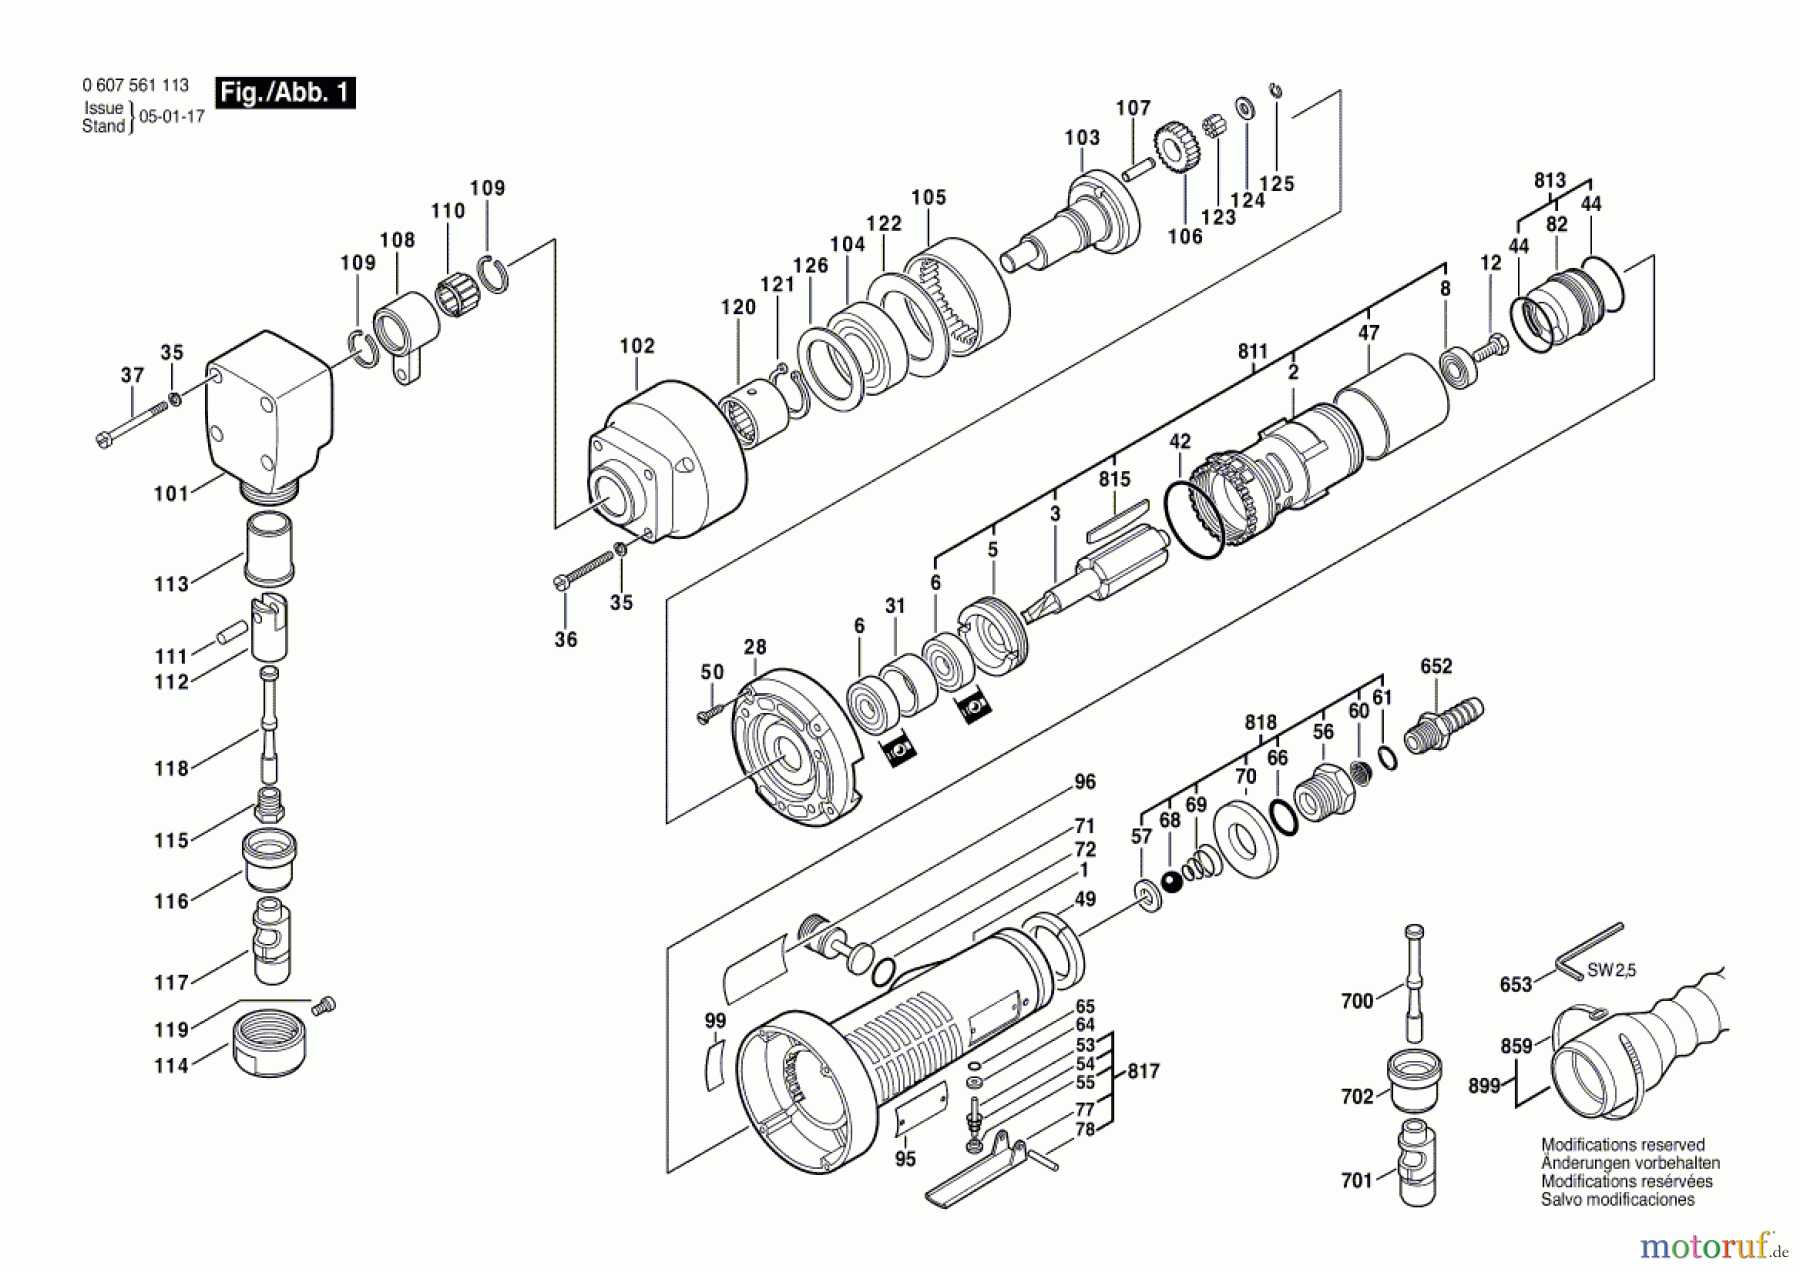  Bosch Werkzeug Pw-Nager 400 WATT-SERIE Seite 1